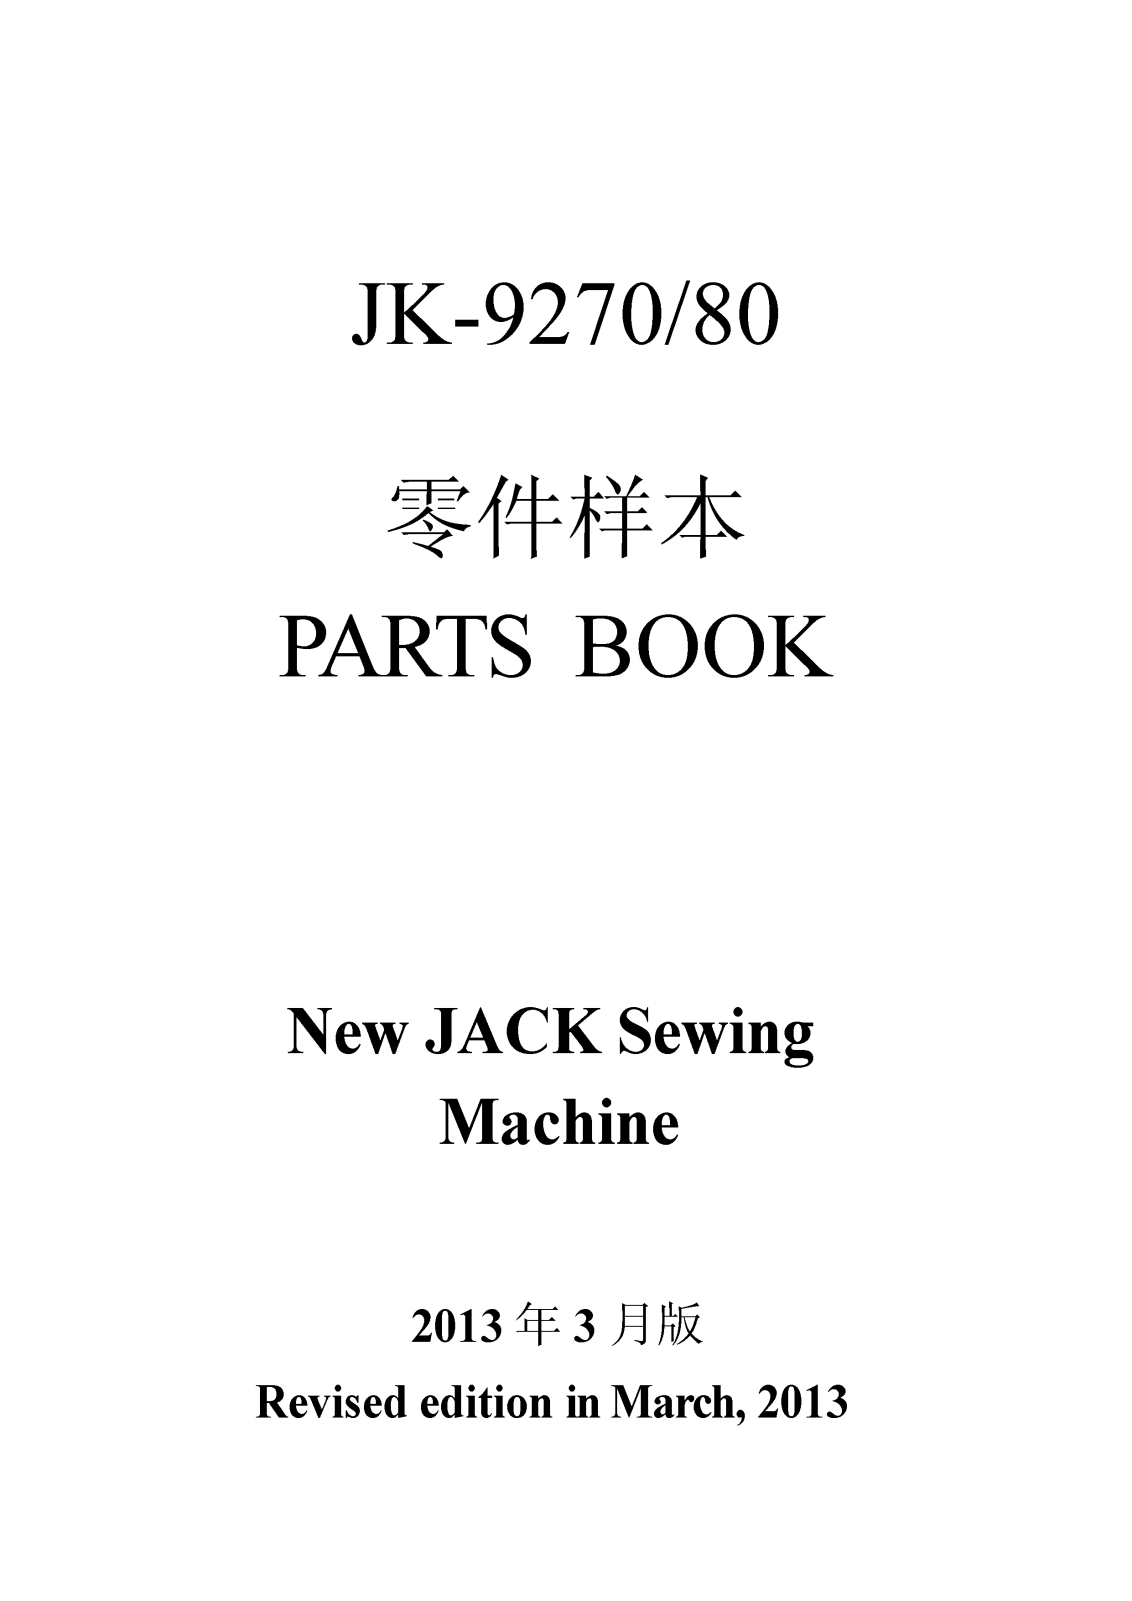 Jack JK-T9270, JK-T 9280 Parts Book